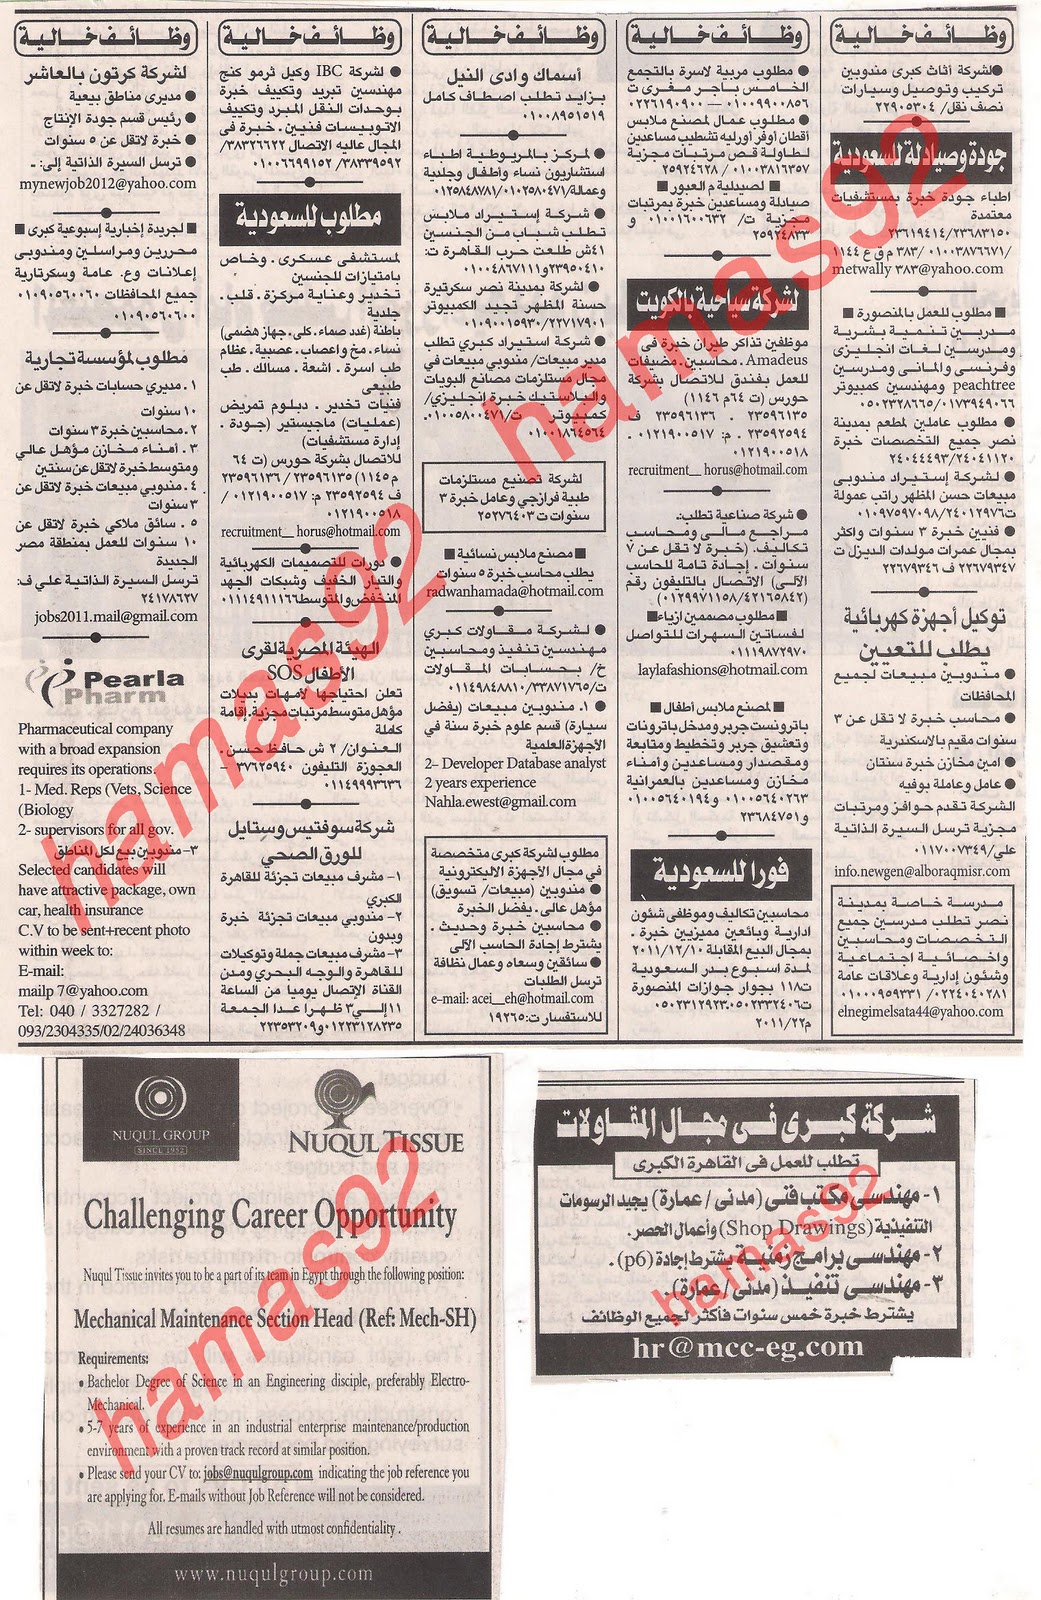 وظائف جريدة الاهرام الجمعة 9  ديسمبر 2011 , الجزء الاول , وظائف اهرام الجمعة 9\12\2011 Picture+010